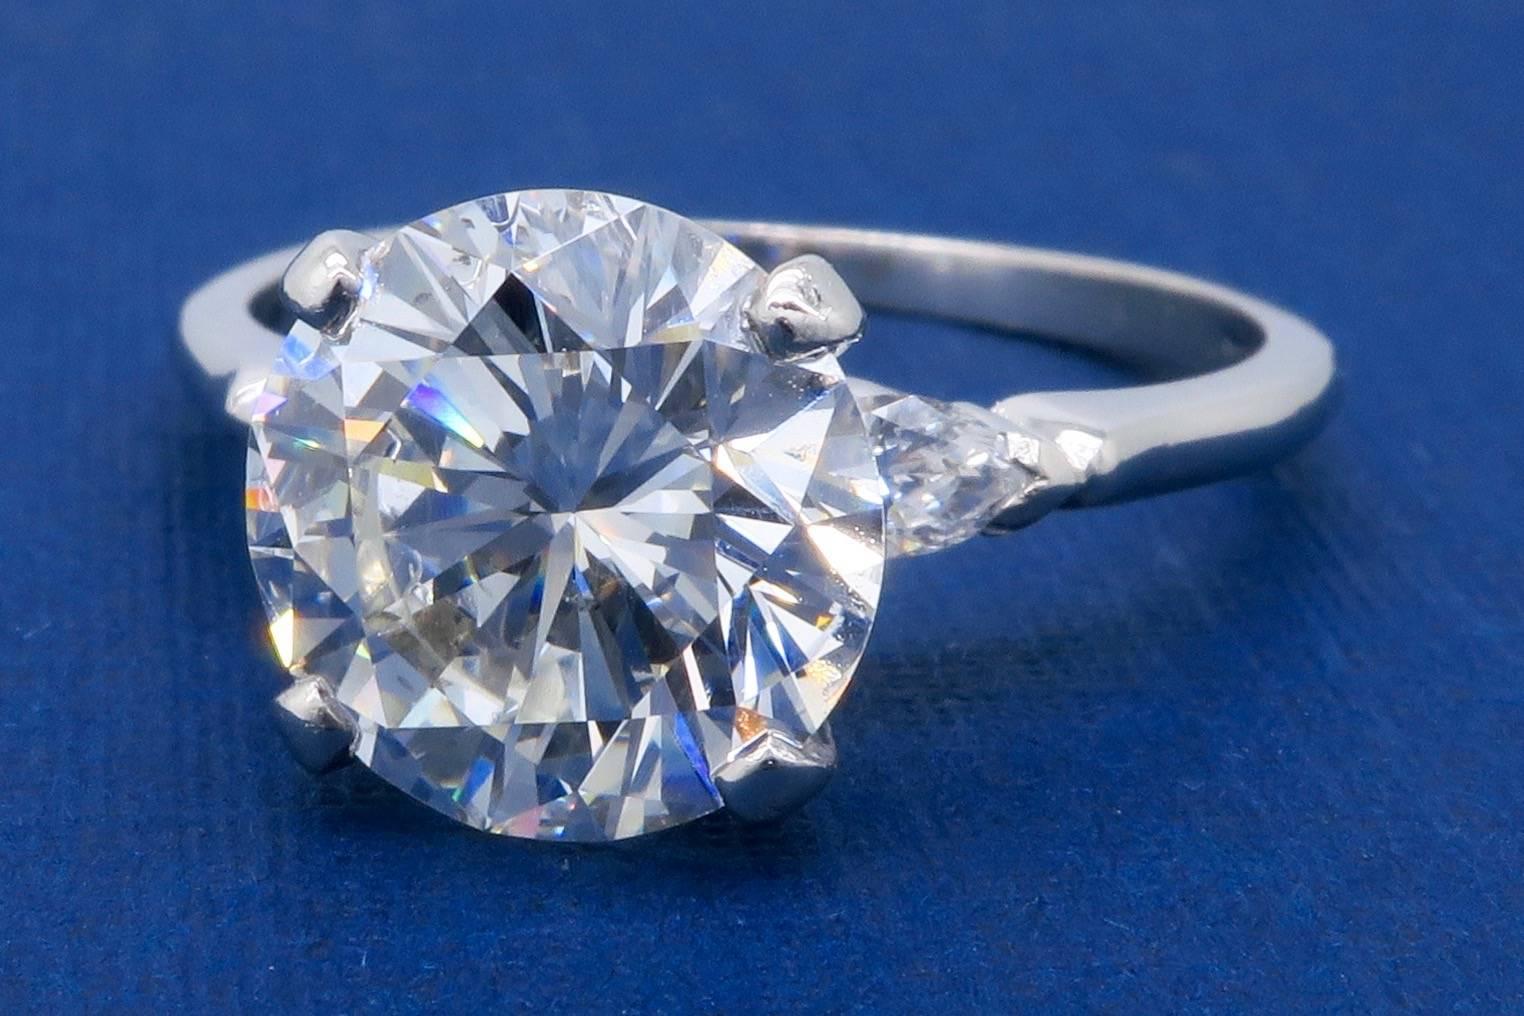 4.83 carat diamond worth